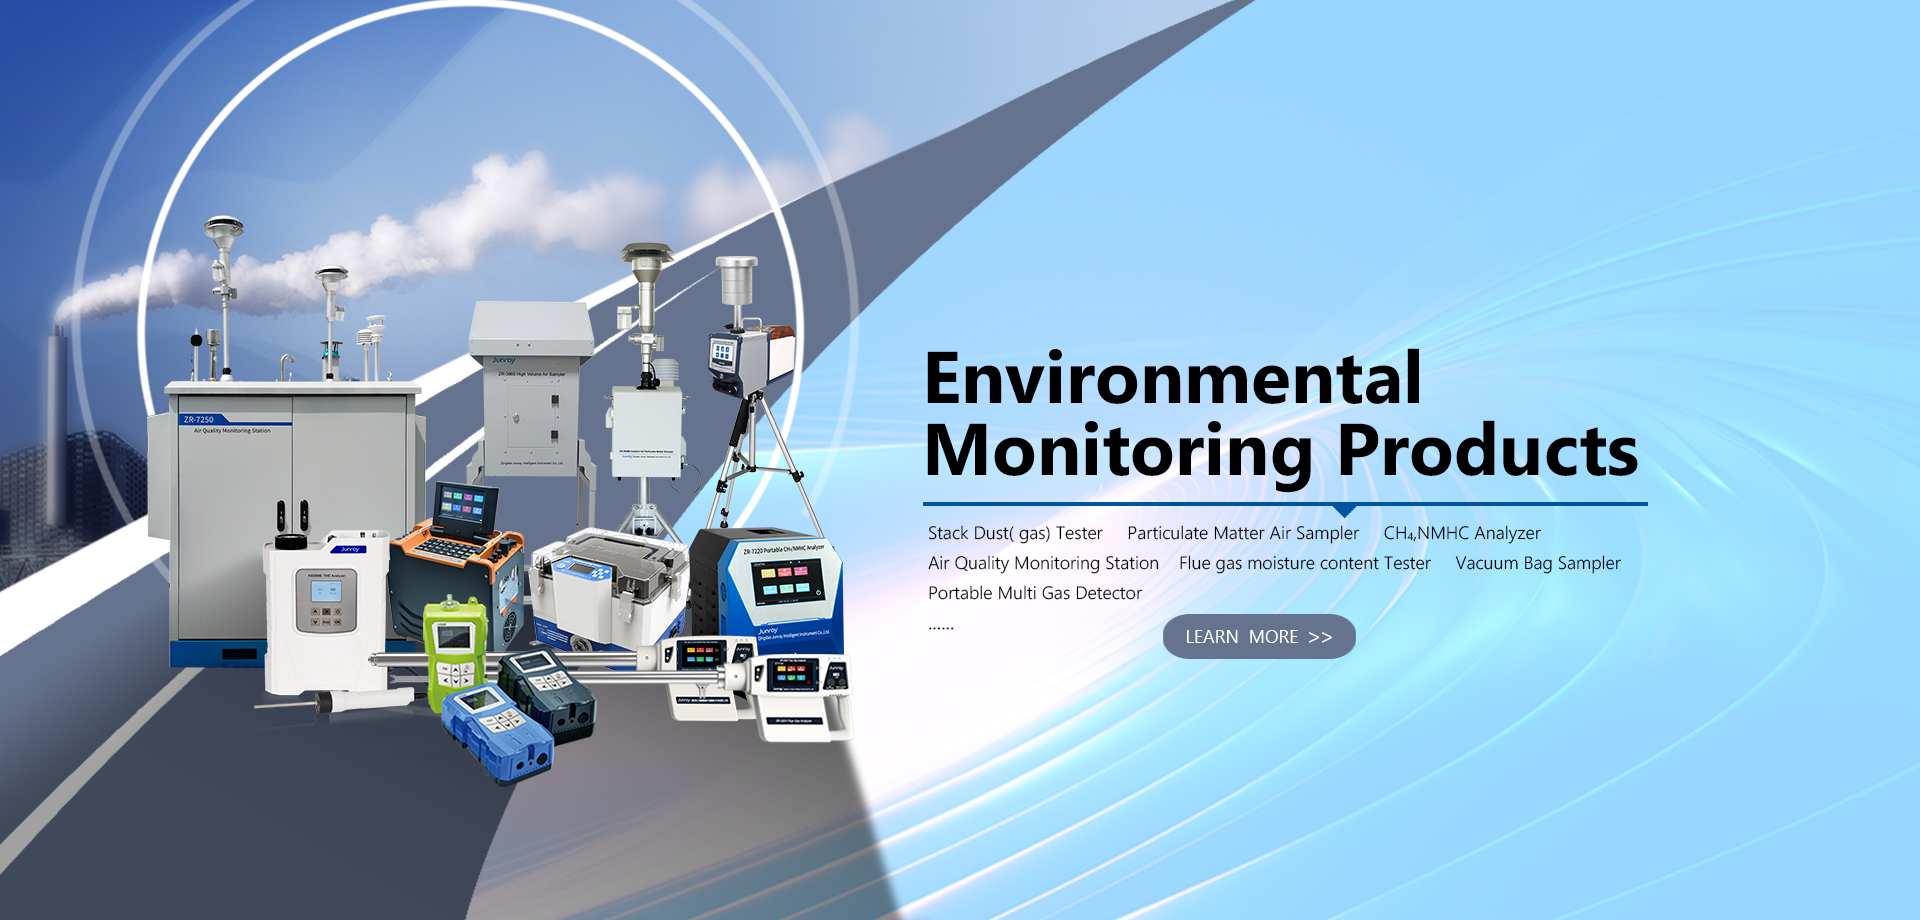 Environmental monitoring products